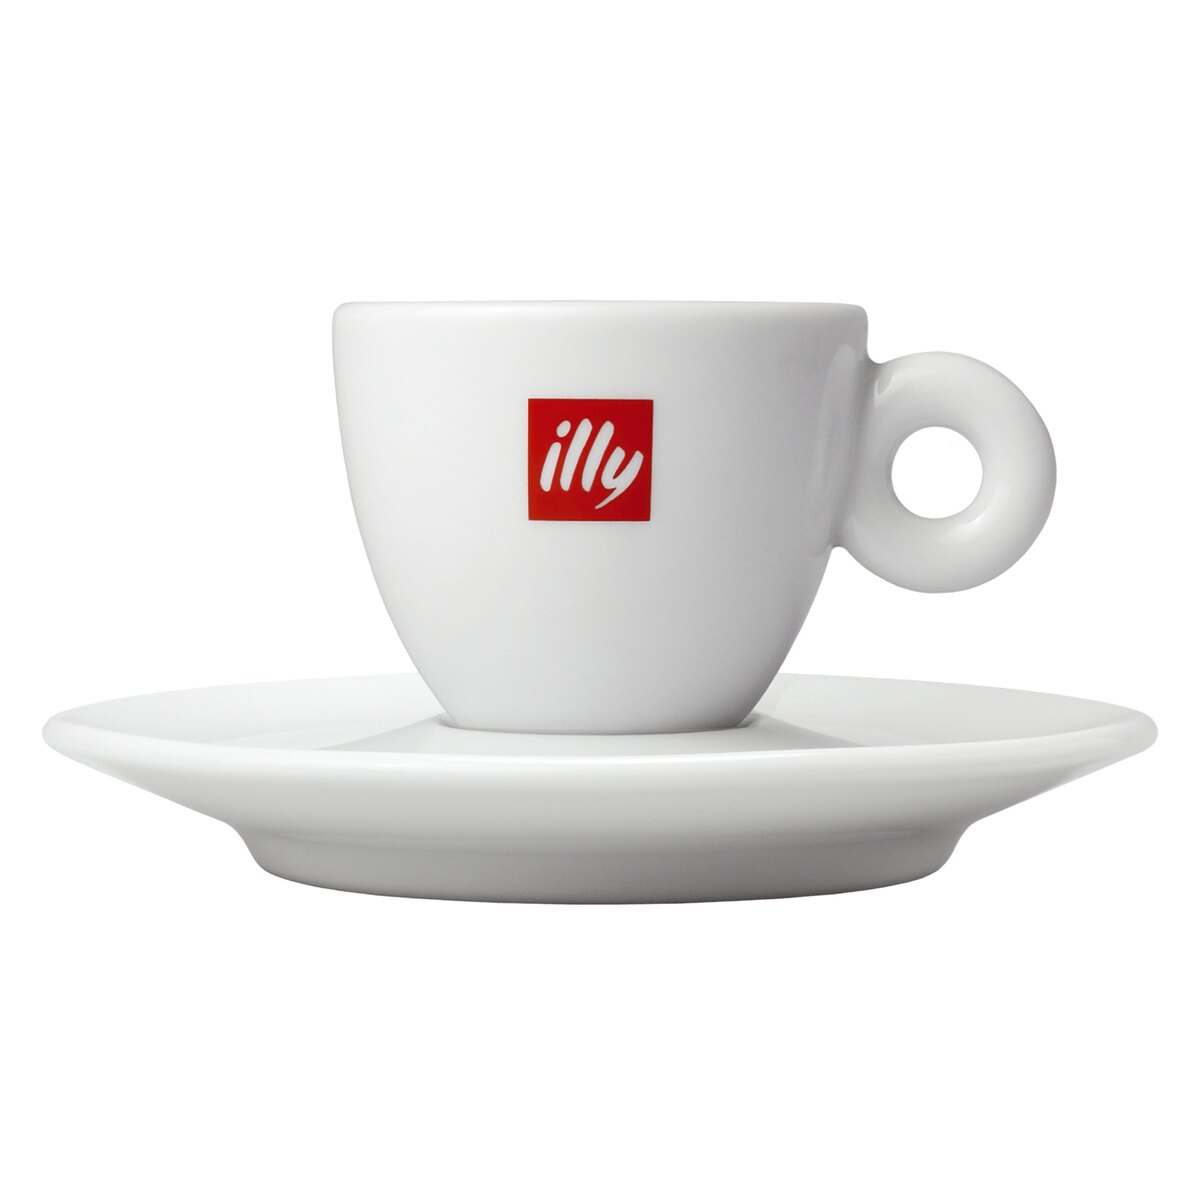 Tasses à espresso avec logo illy